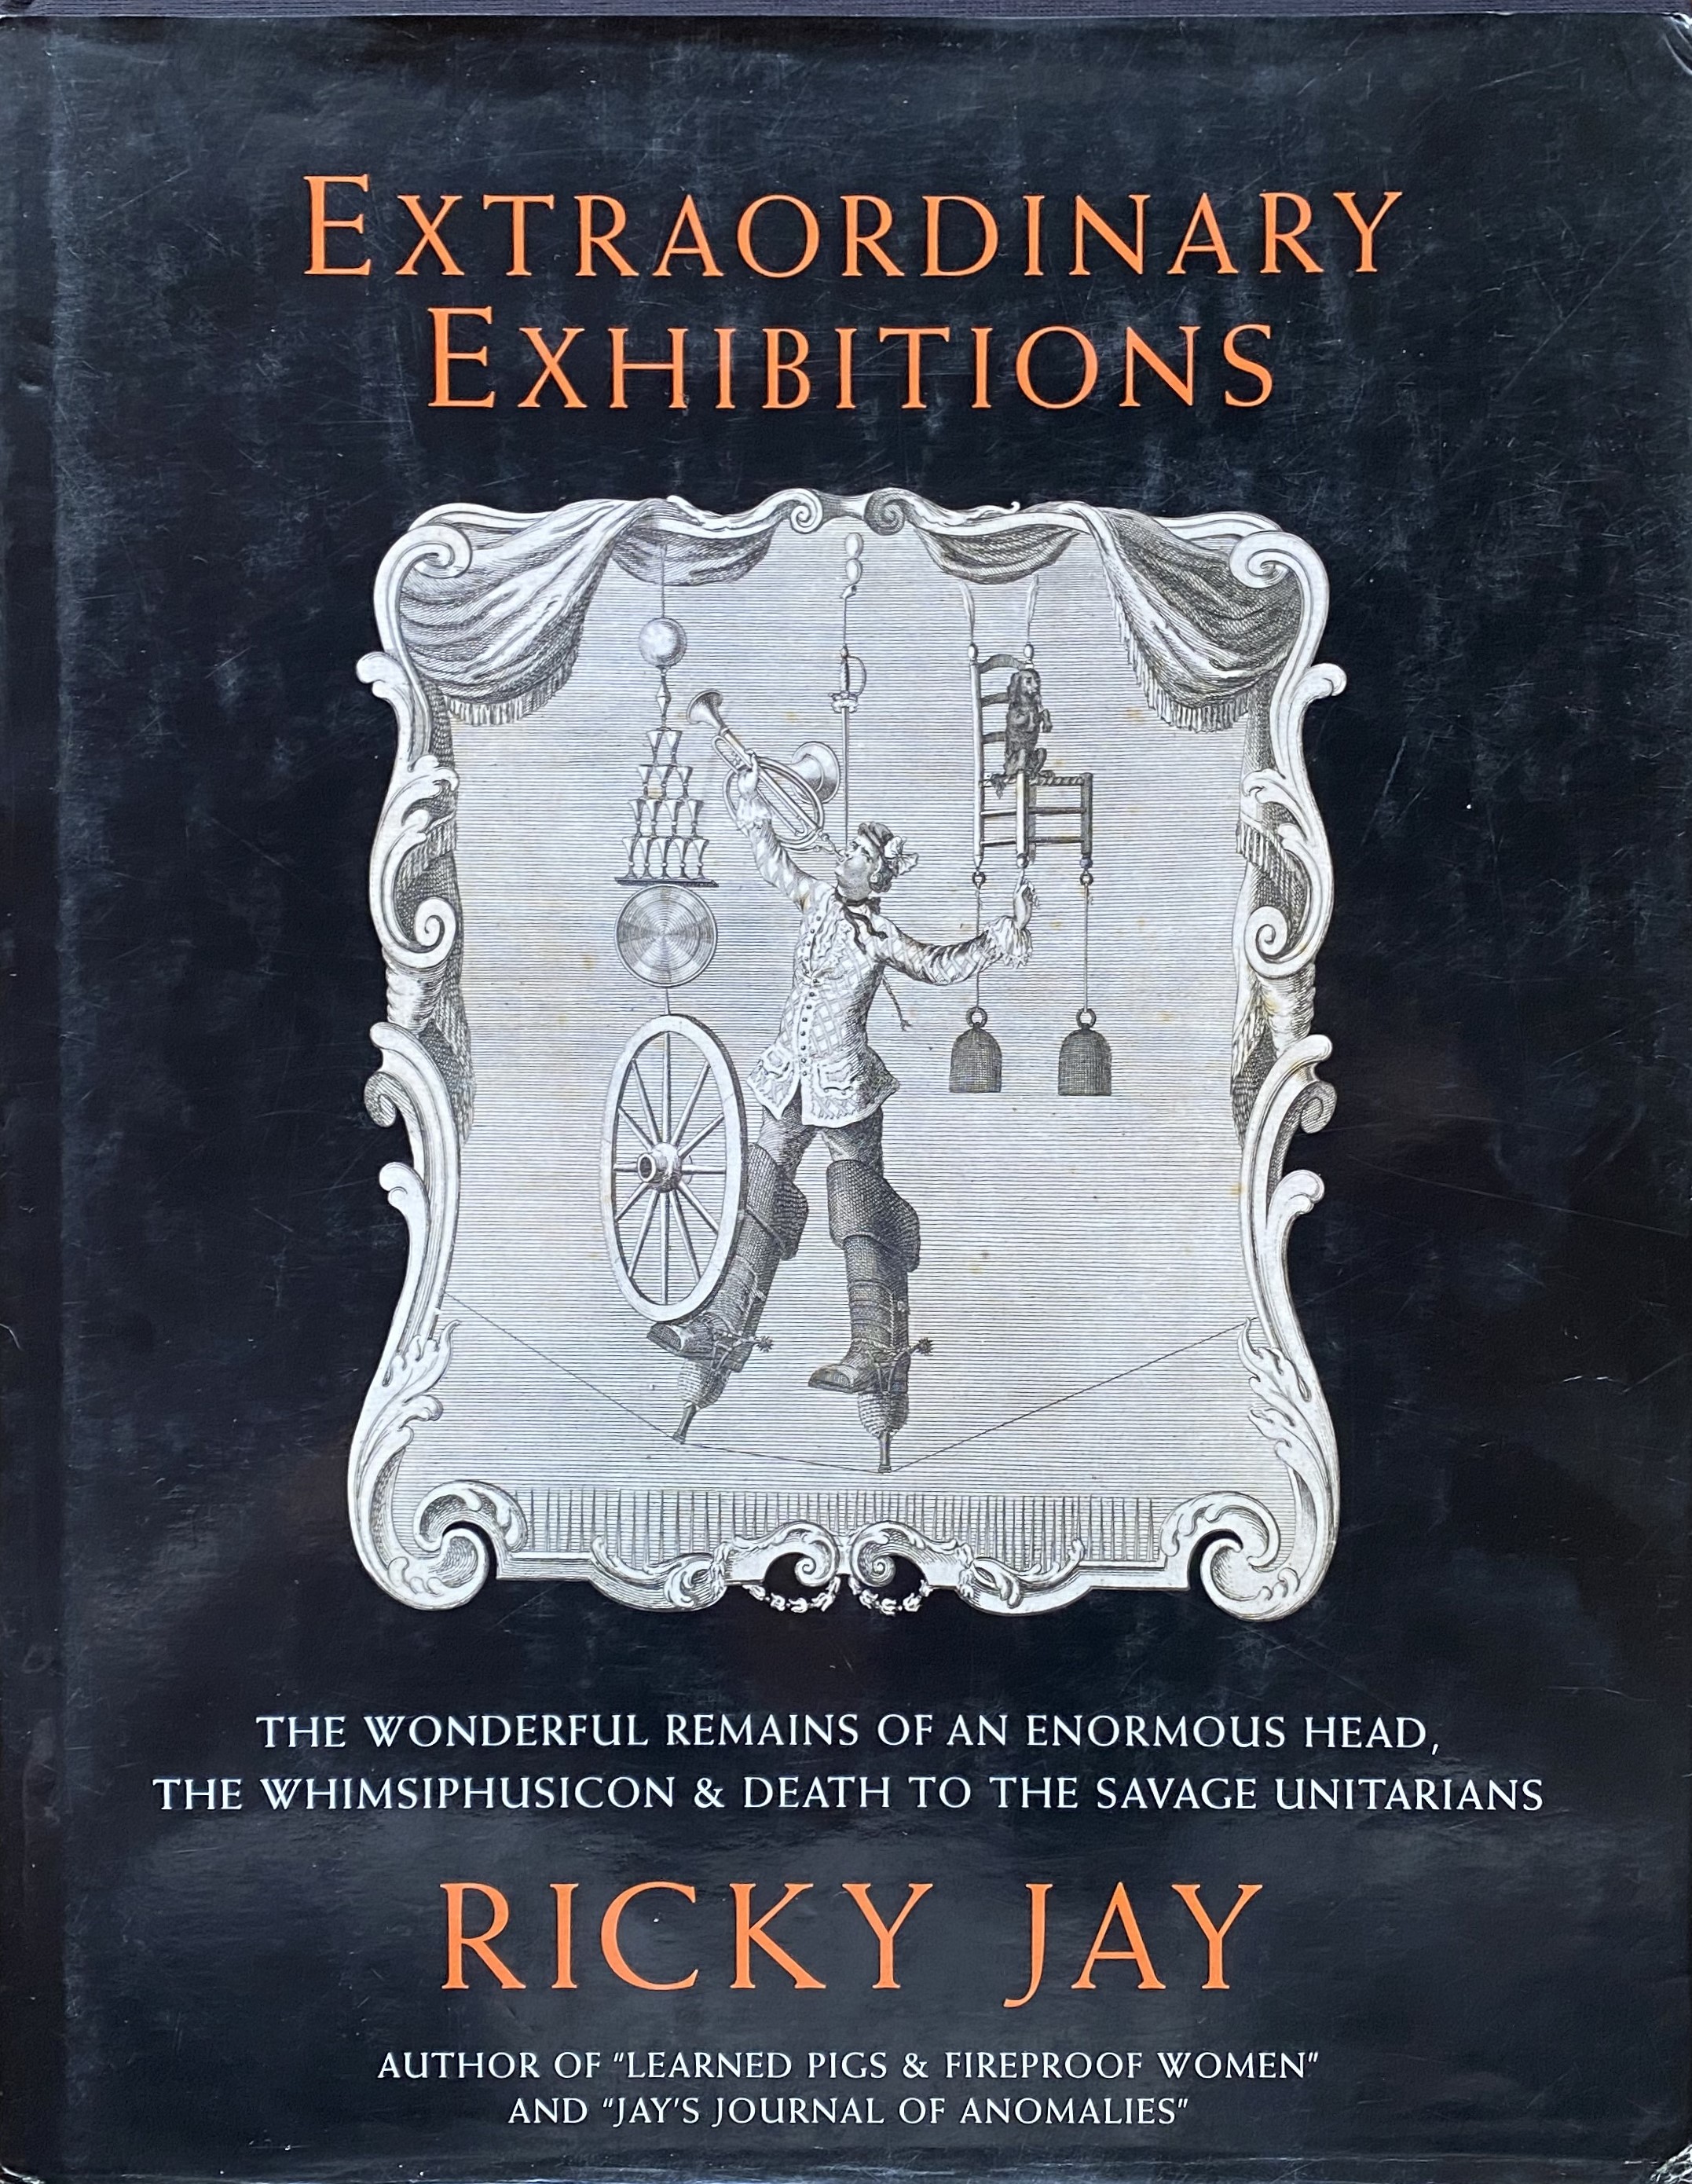 Extraordinary Exhibition Ricky Jay